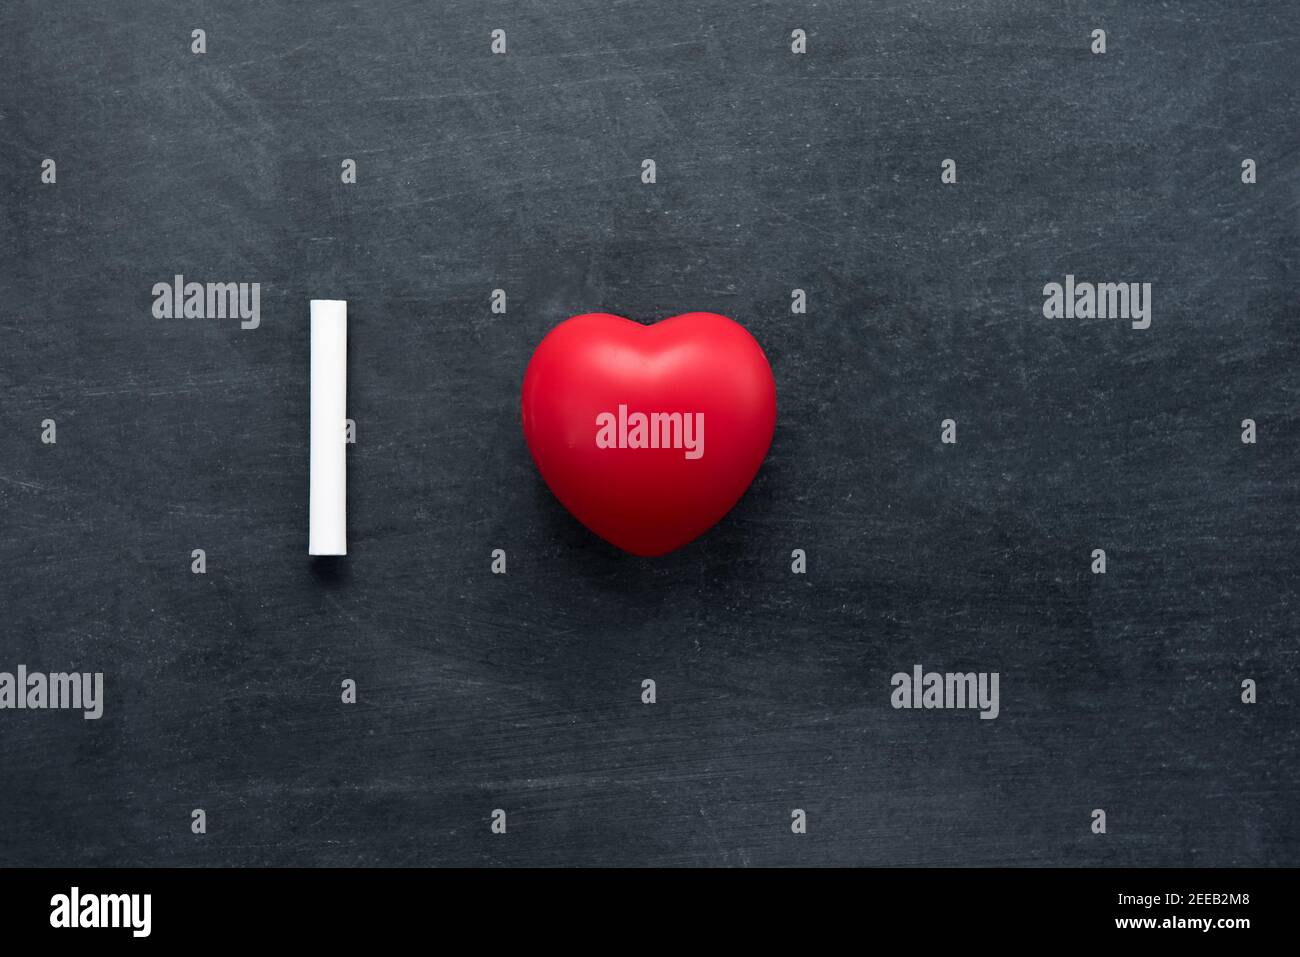 Gesso bianco con pallina rossa a forma di cuore che rappresenta l'amore, su sfondo lavagna con spazio vuoto Foto Stock